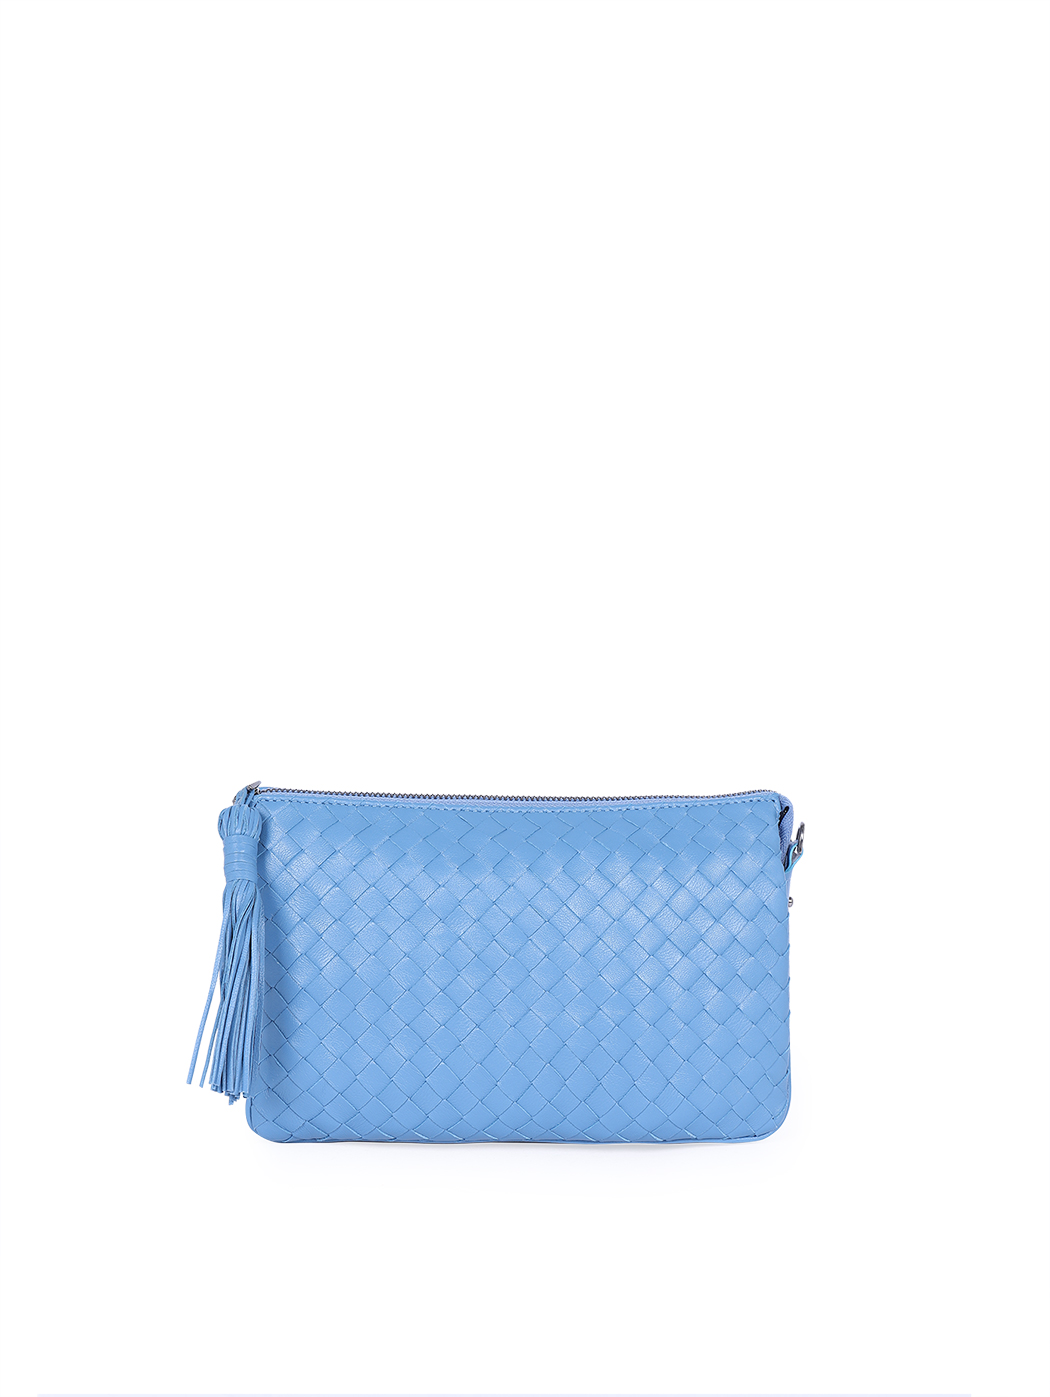 Плетеная сумка – клатч со съемным ремнем коллекции Intrecci светло - голубого цвета